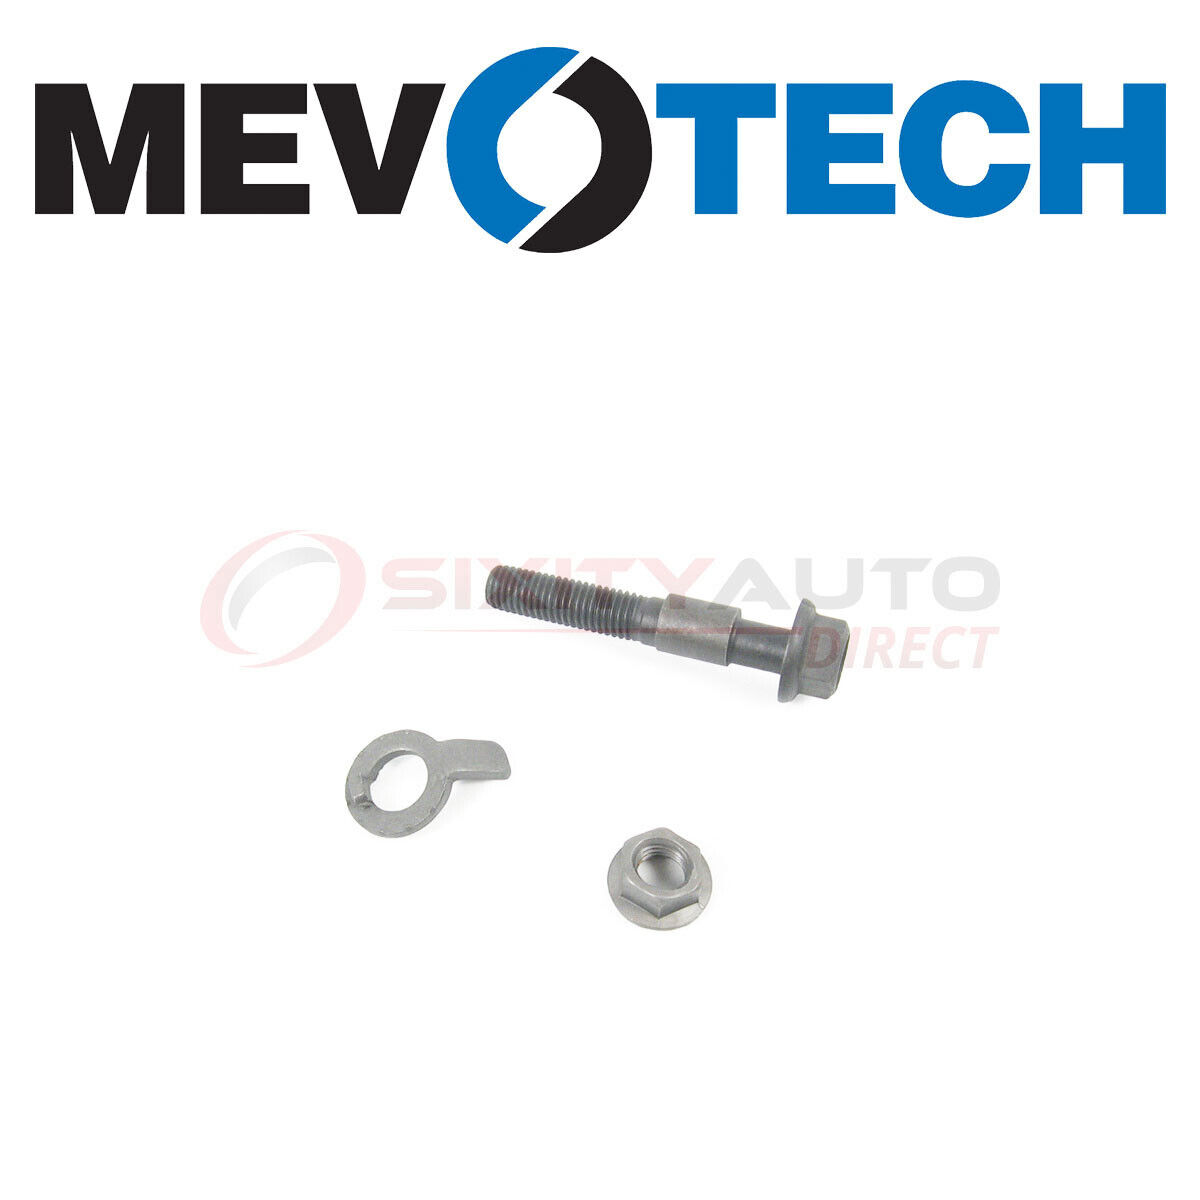 Mevotech Alignment Camber Kit for 2000-2001 Oldsmobile Alero 2.4L 3.4L L4 V6 ek